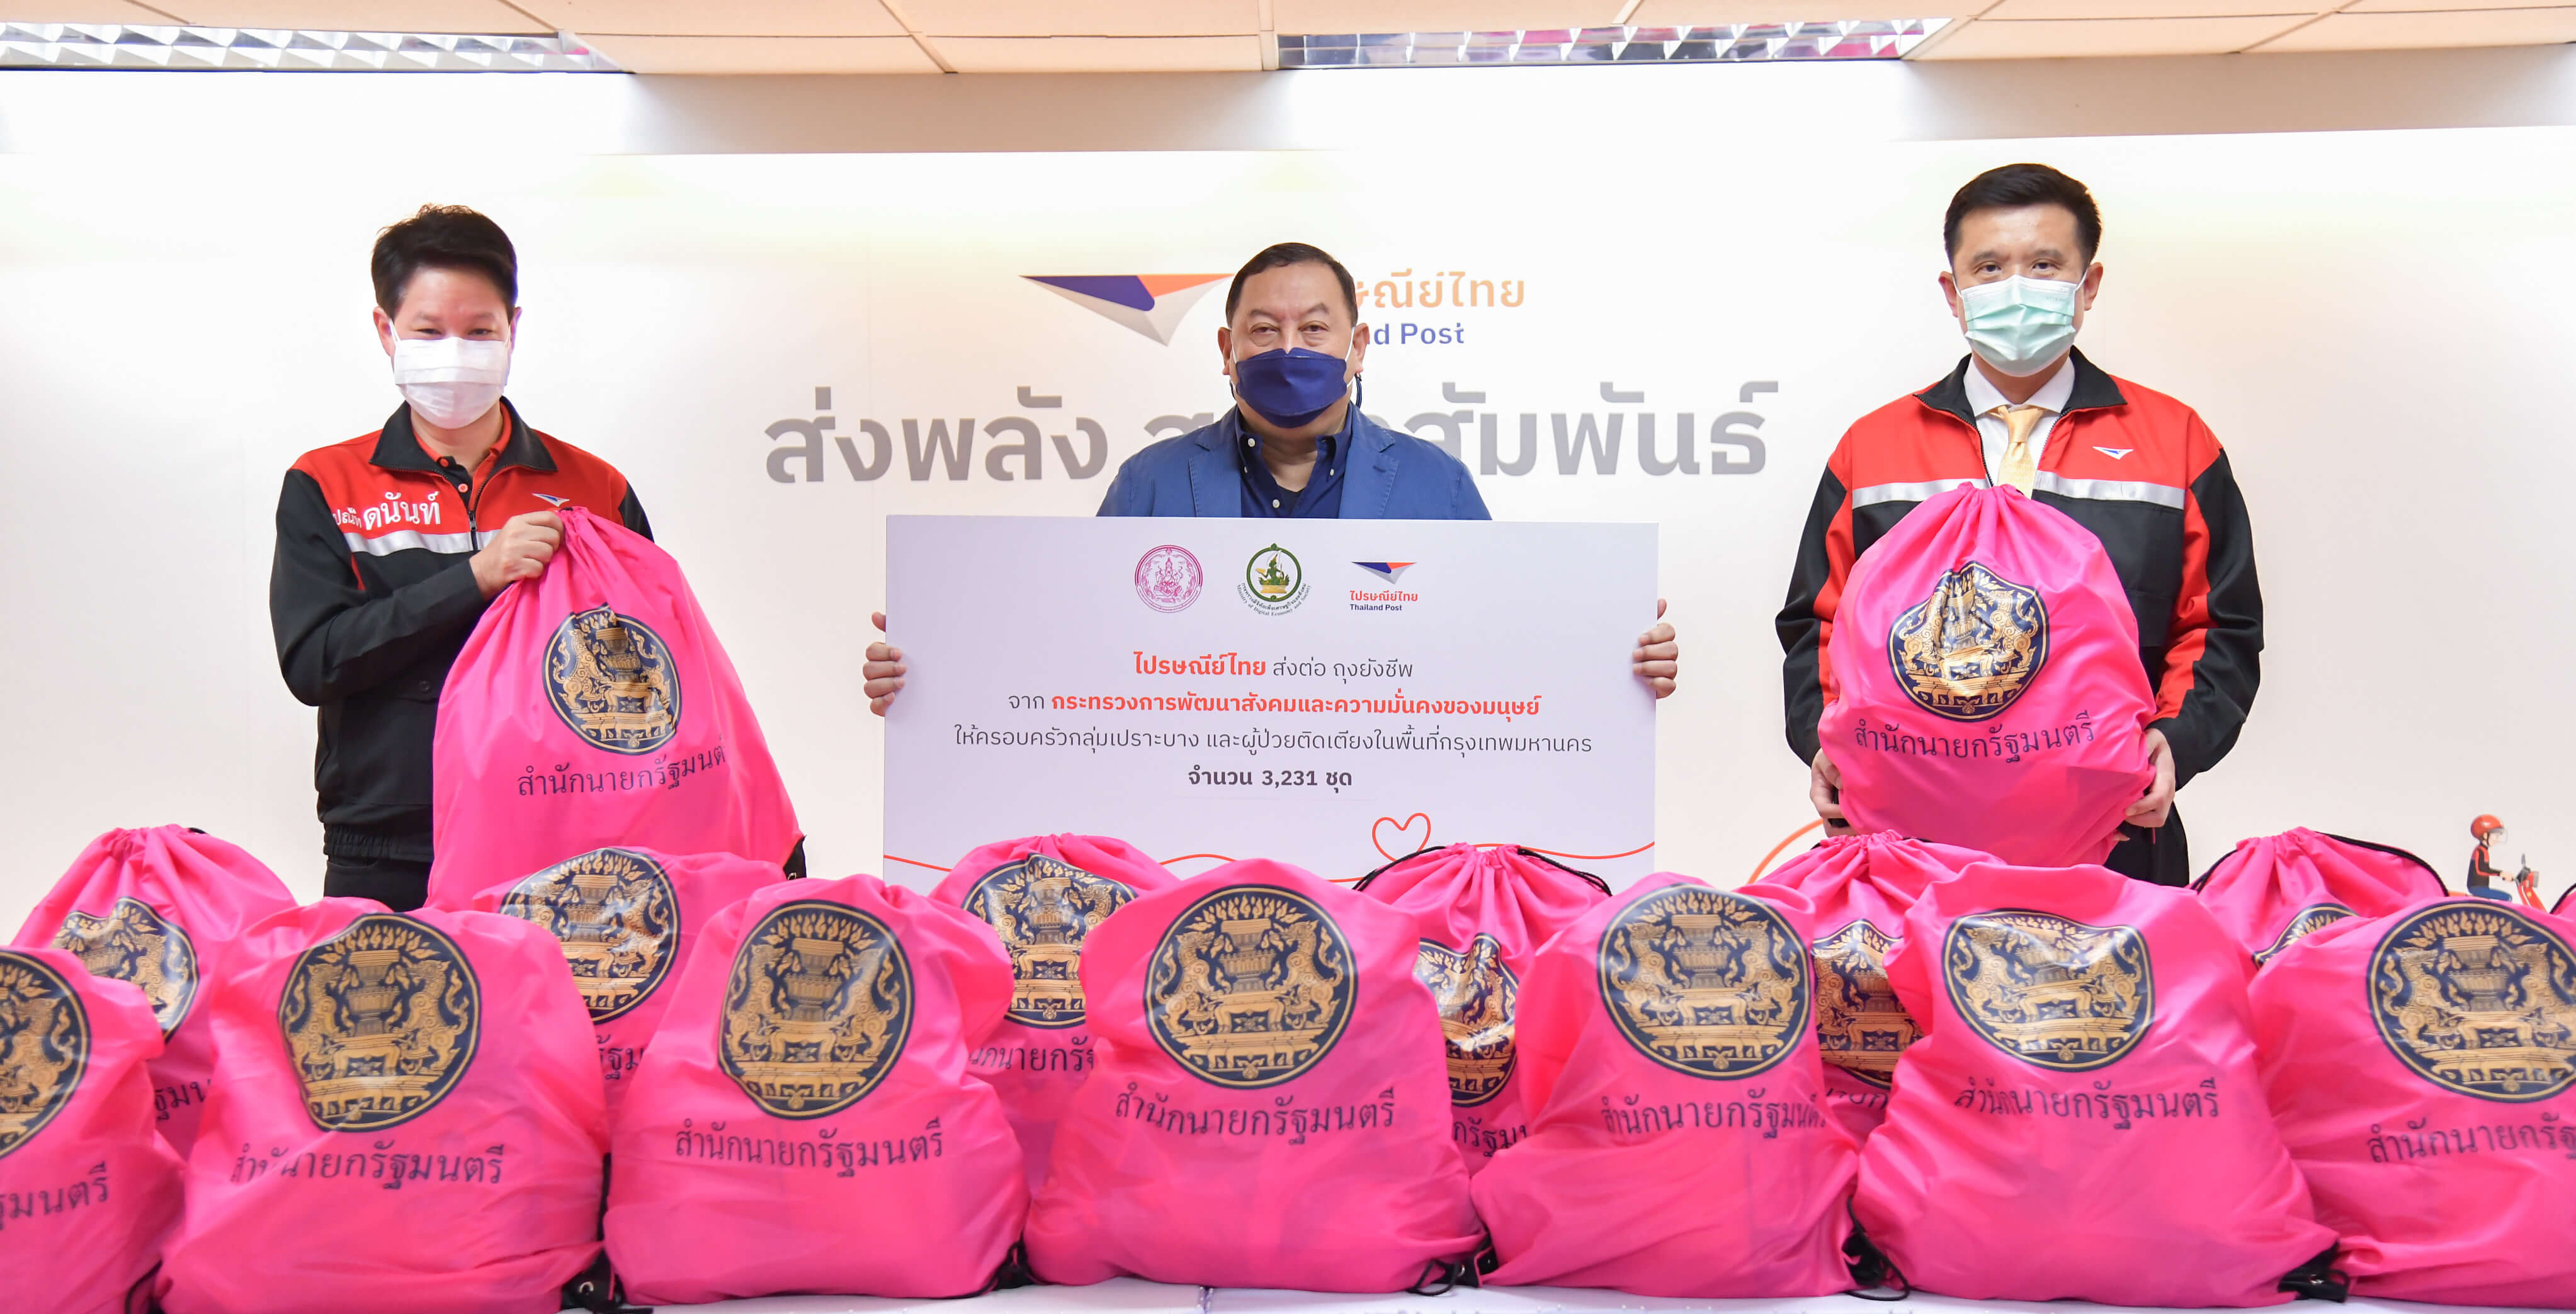 กระทรวงดีอีเอส มอบไปรษณีย์ไทย สนับสนุน พม. จัดส่งถุงยังชีพ รุกช่วยเหลือผู้เปราะบาง – ผู้ป่วยติดเตียงในพื้นที่กรุงเทพฯ 